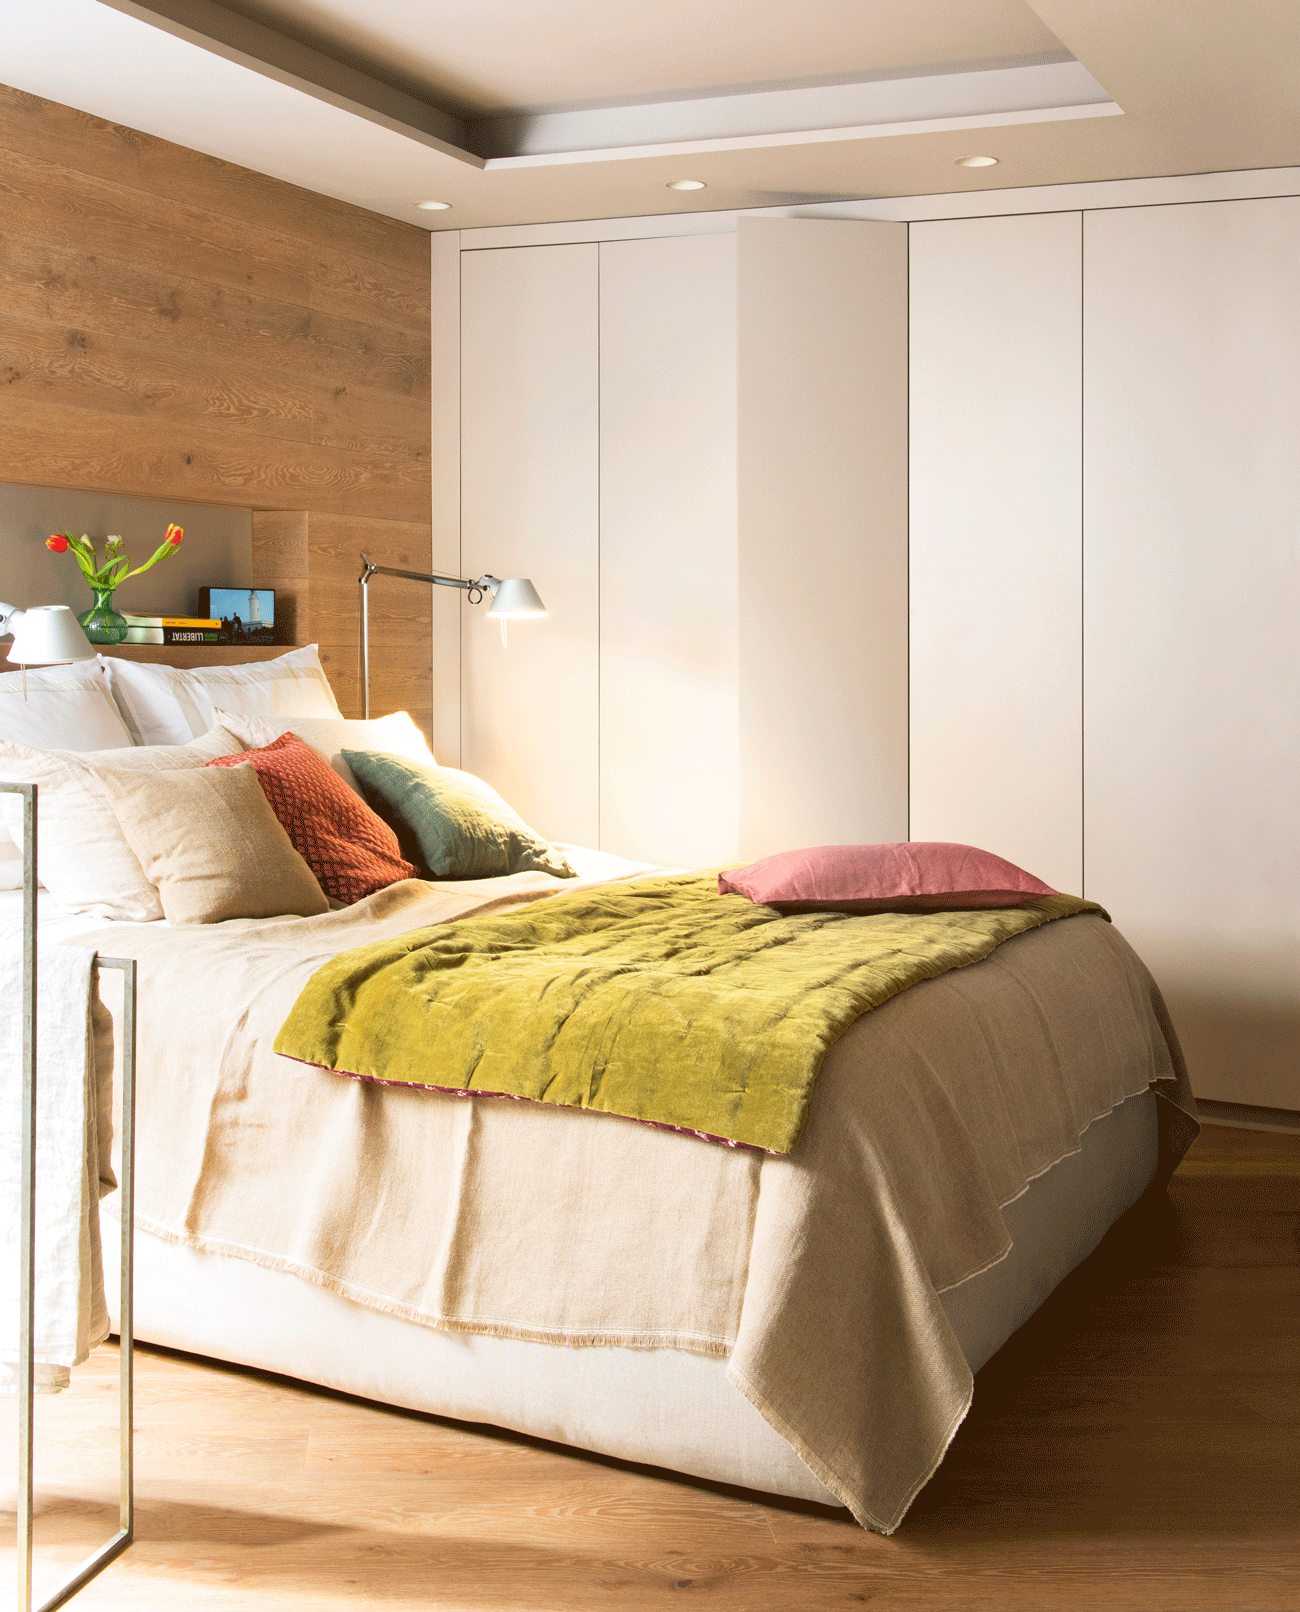 Dormitorio moderno con pared del cabecero revestida en madera.